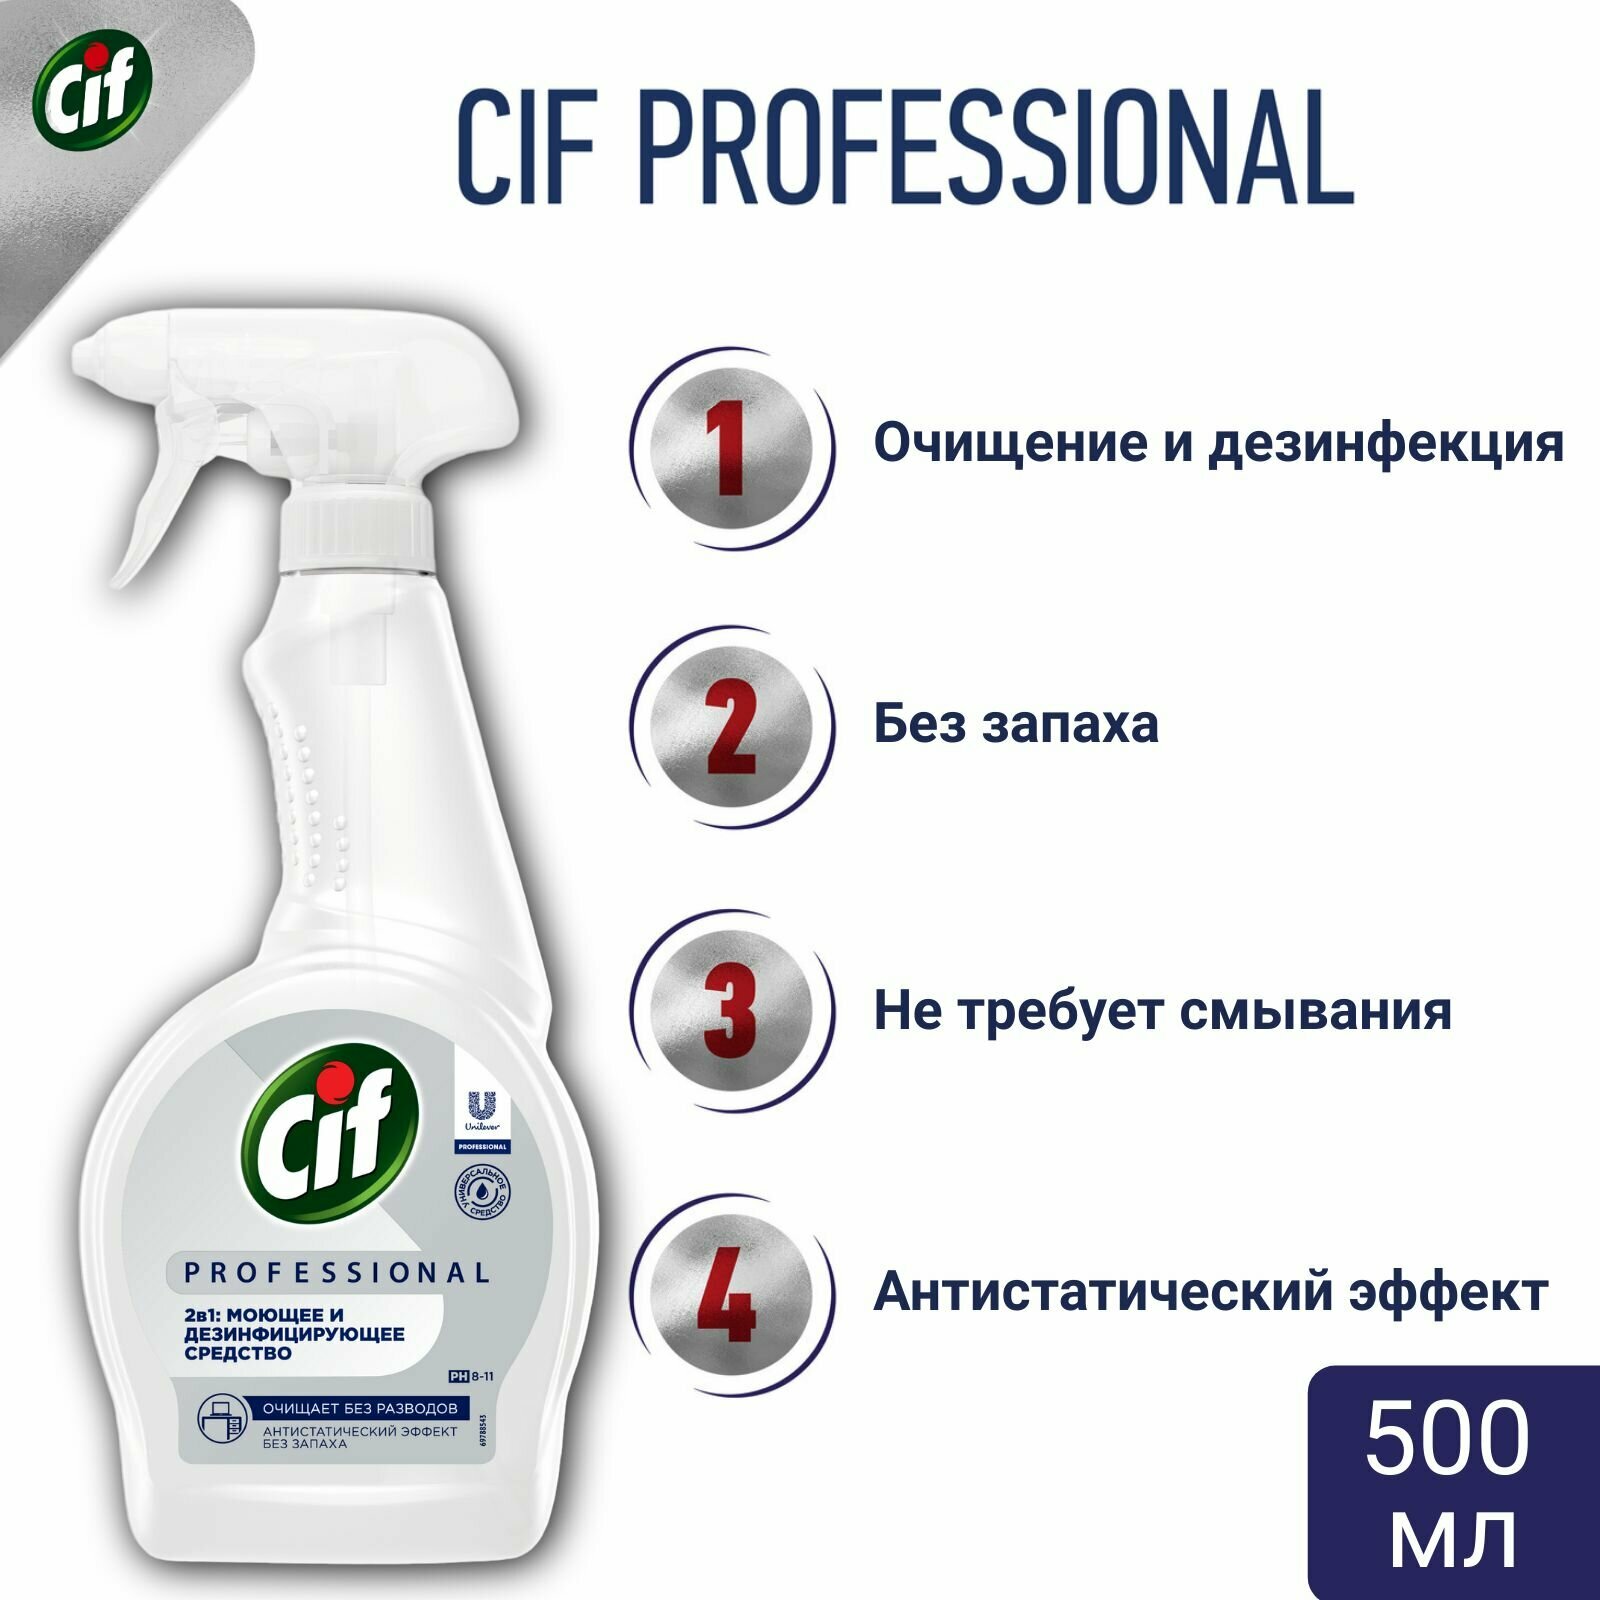 Cif Professional 2в1 средство чистящее моющее и дезинфицирующее 500 мл.